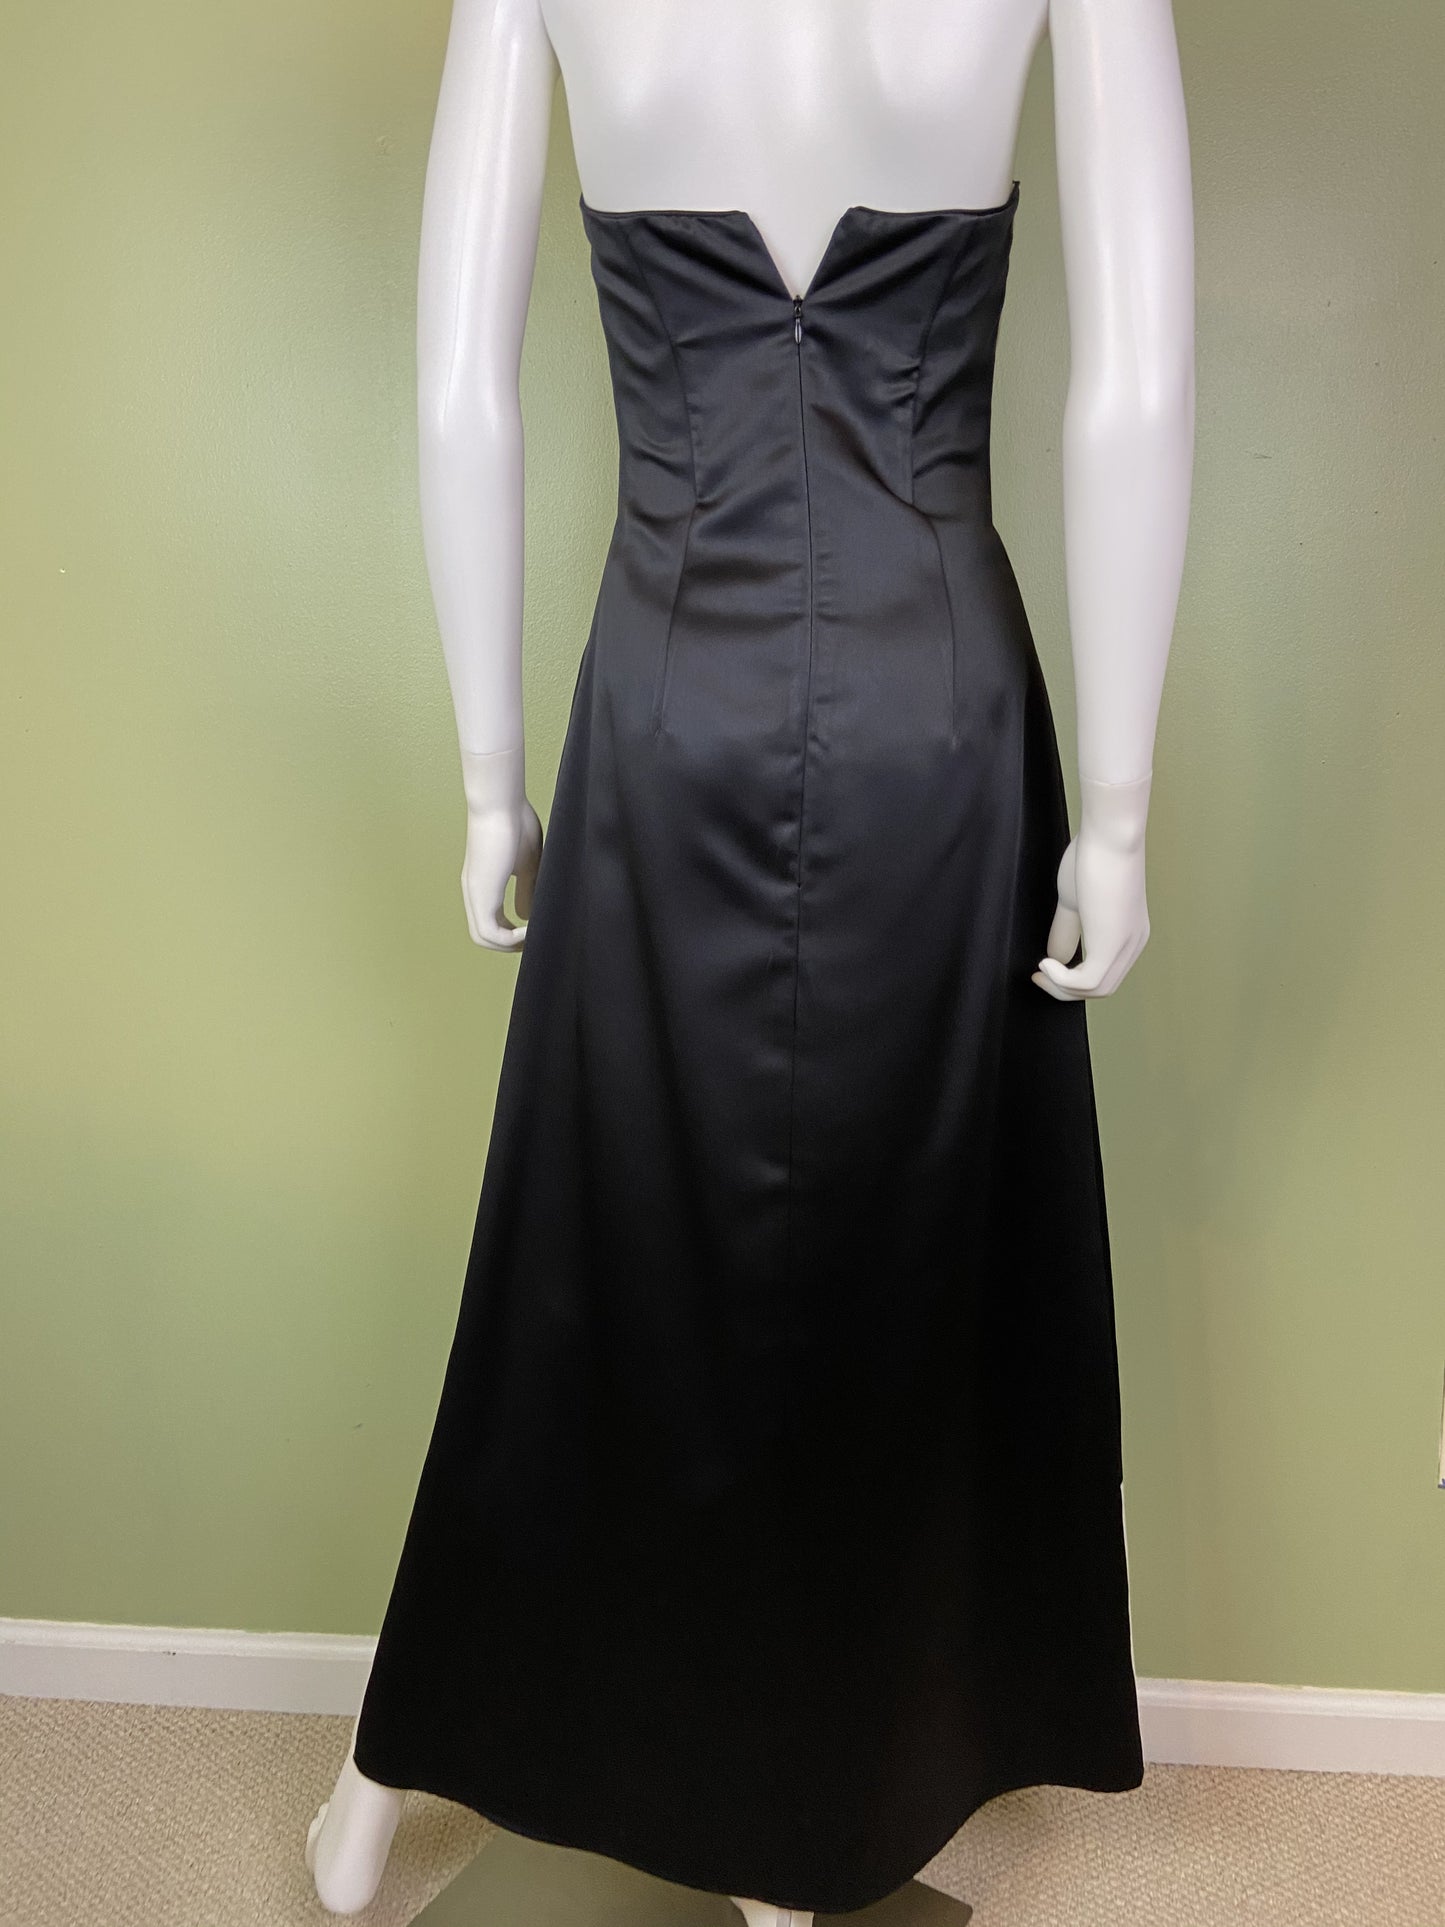 Vintage Satin Black White Checkerboard Tuxedo Gown